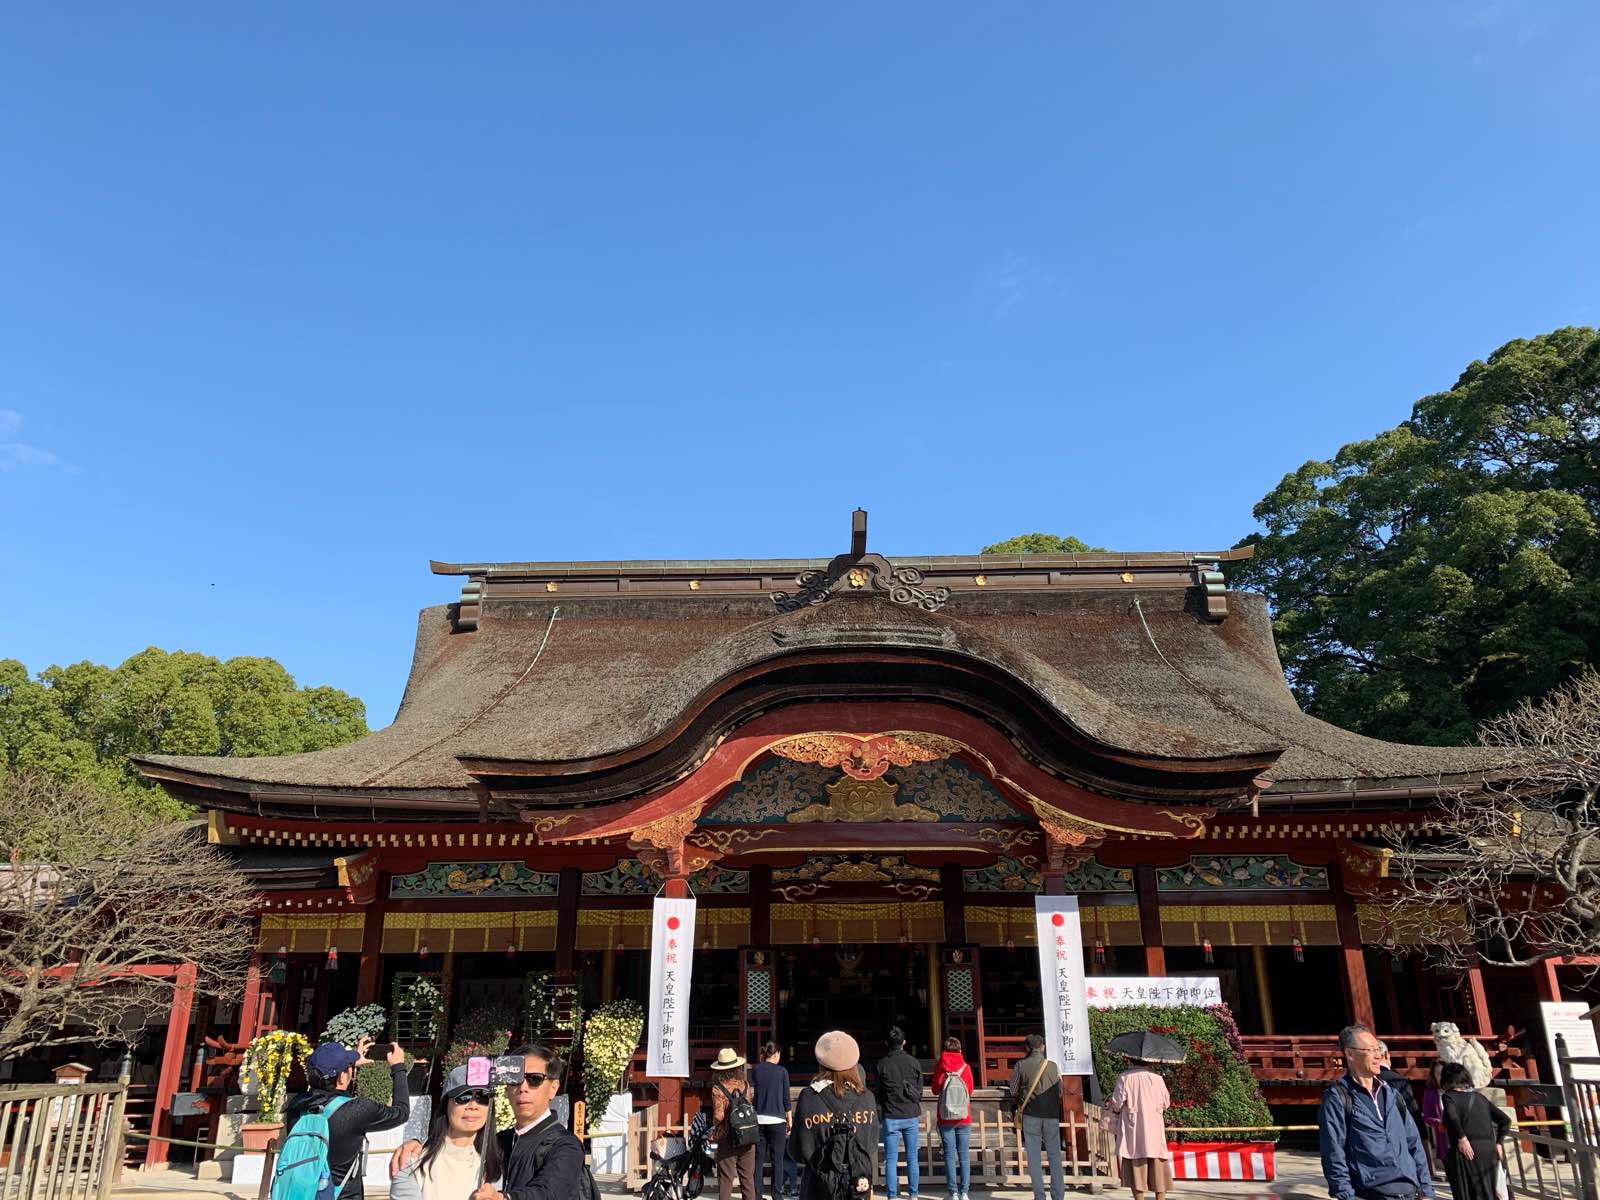 天满宫两个总本社之一，虽然规模及人流均不及京都的北野天满宫，仍旧是值得